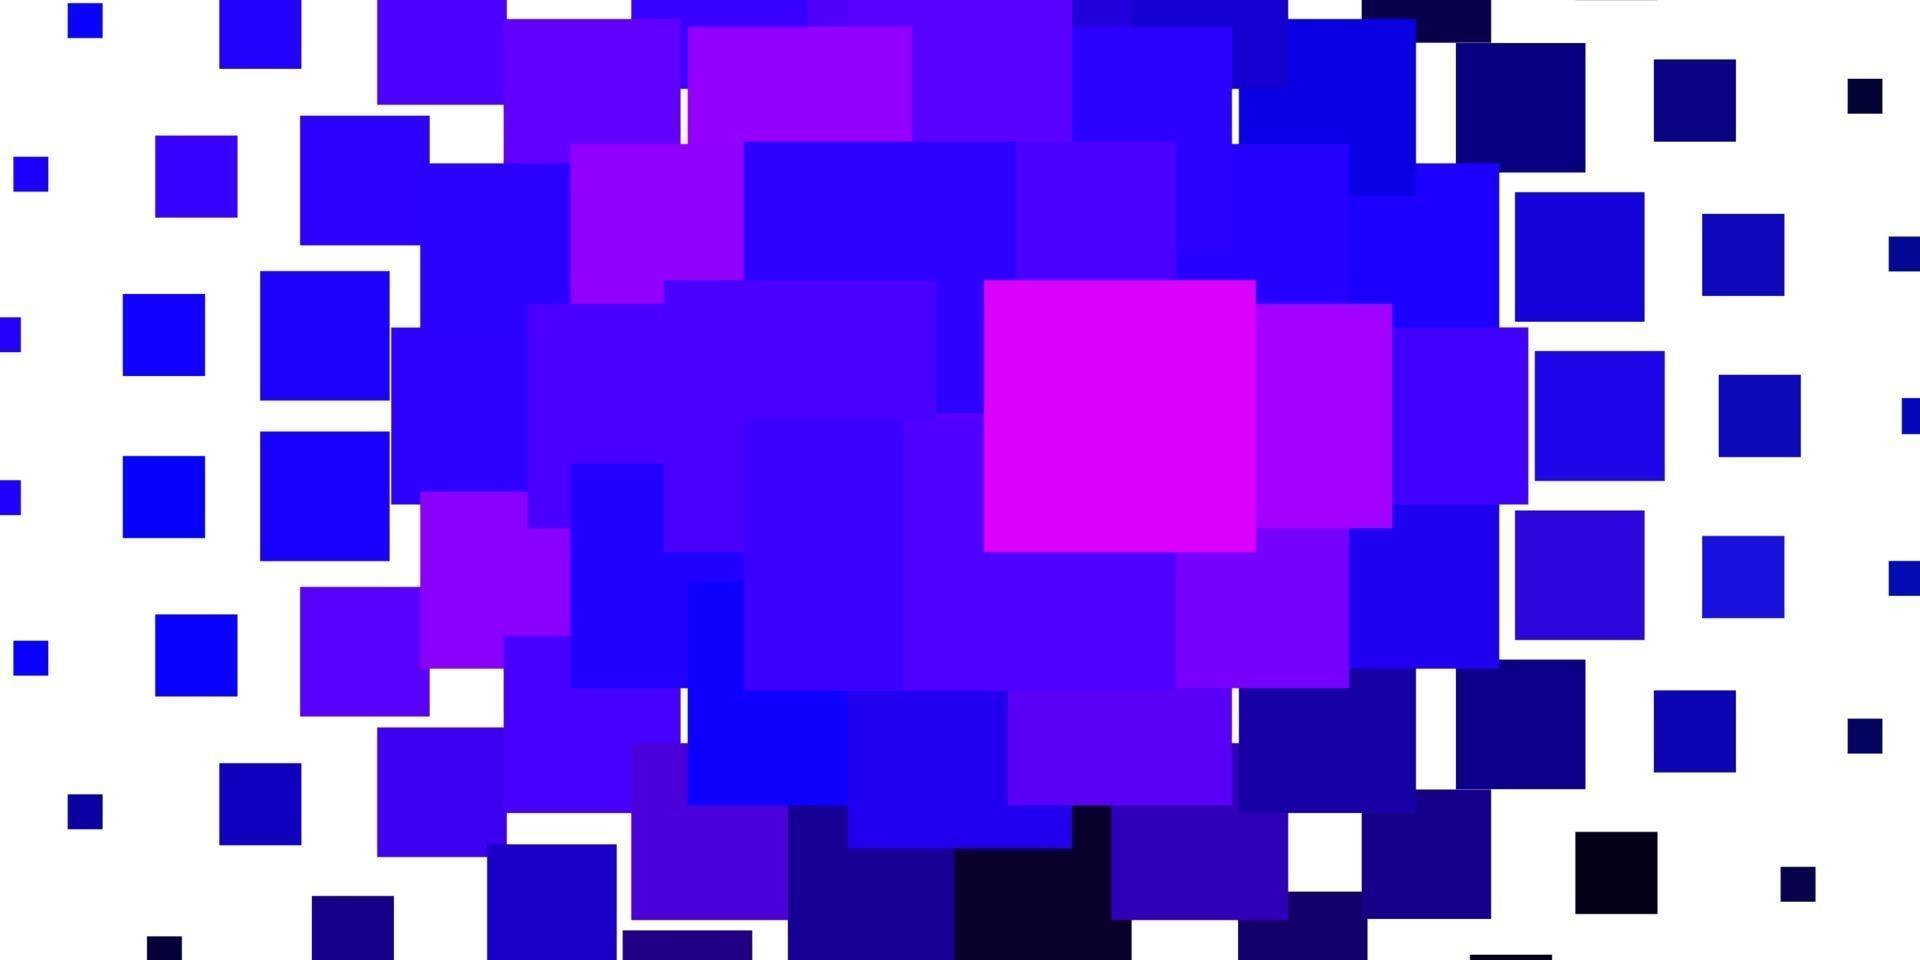 lichtroze, blauwe vectorachtergrond met rechthoeken. vector